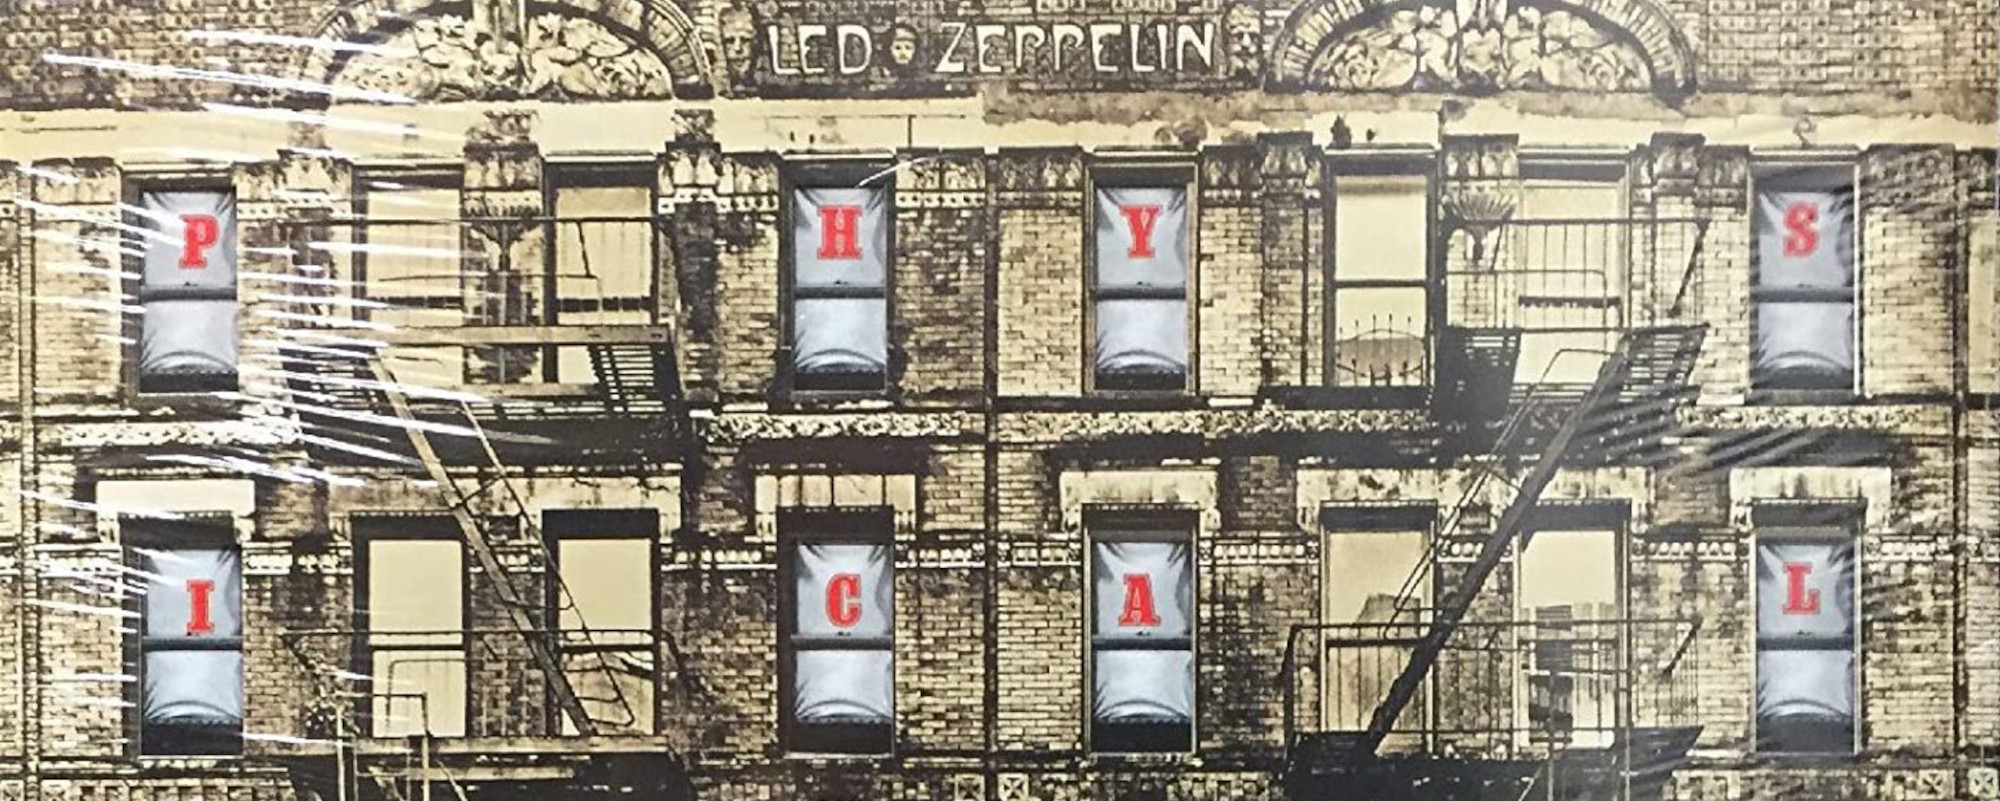 Traktor Kinematik Urimelig Little Known Story Behind Led Zeppelin's 'Physical Graffiti' Album Cover